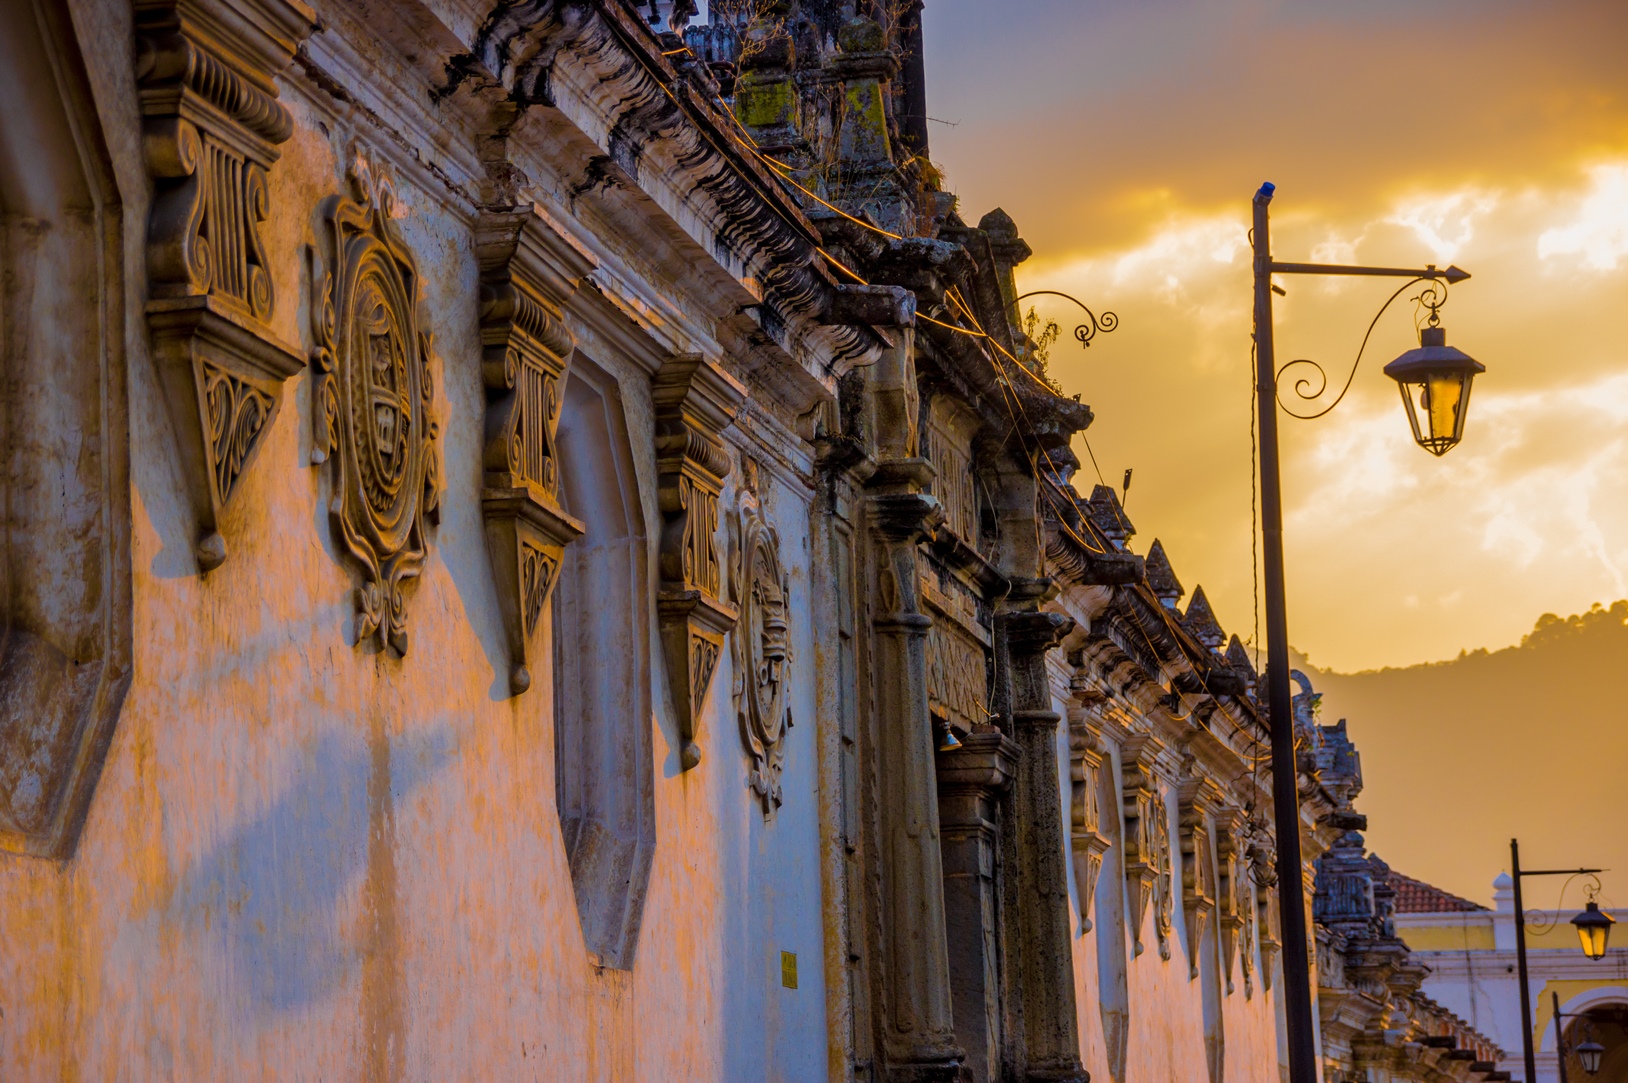 Architecture of Antigua, Guatemala